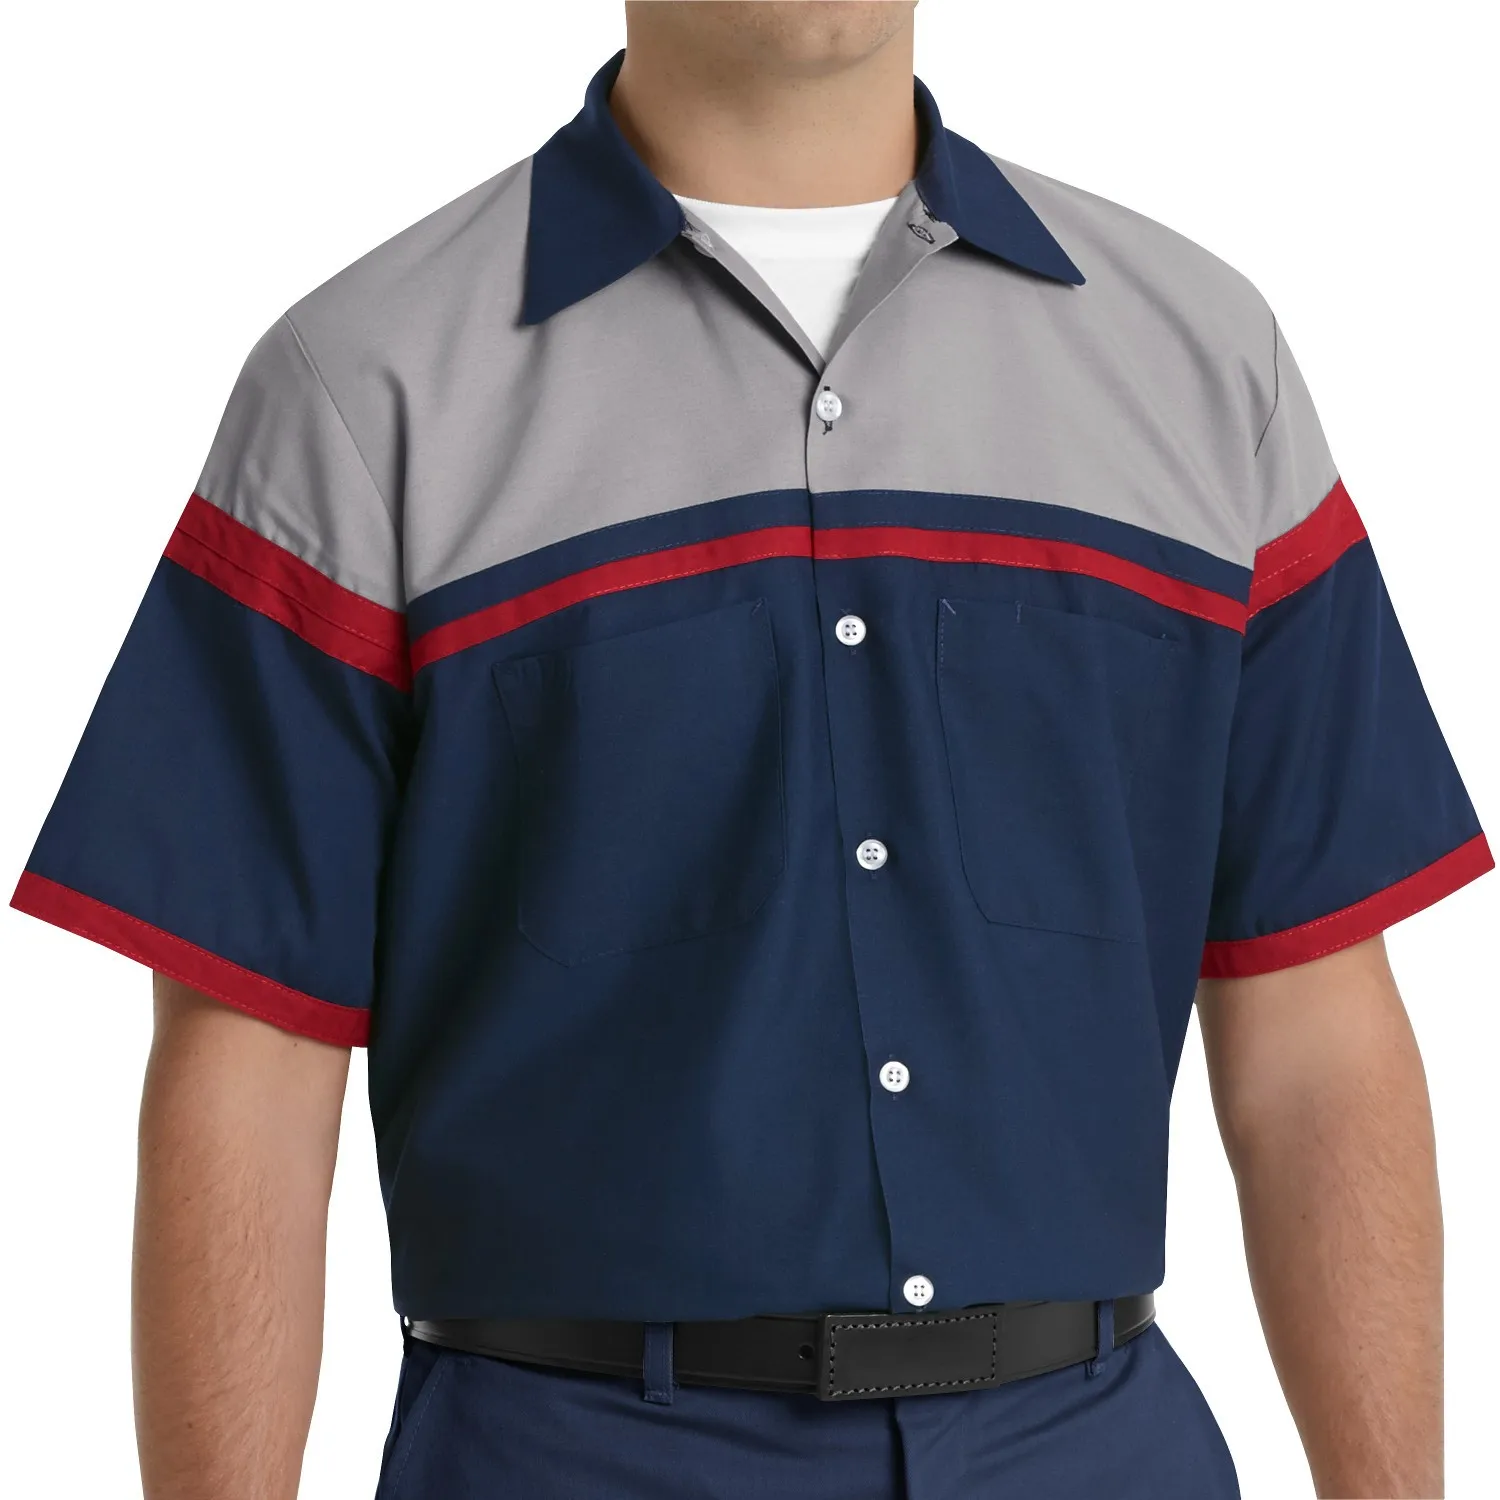 The Mechanic Button Up Work Shirt